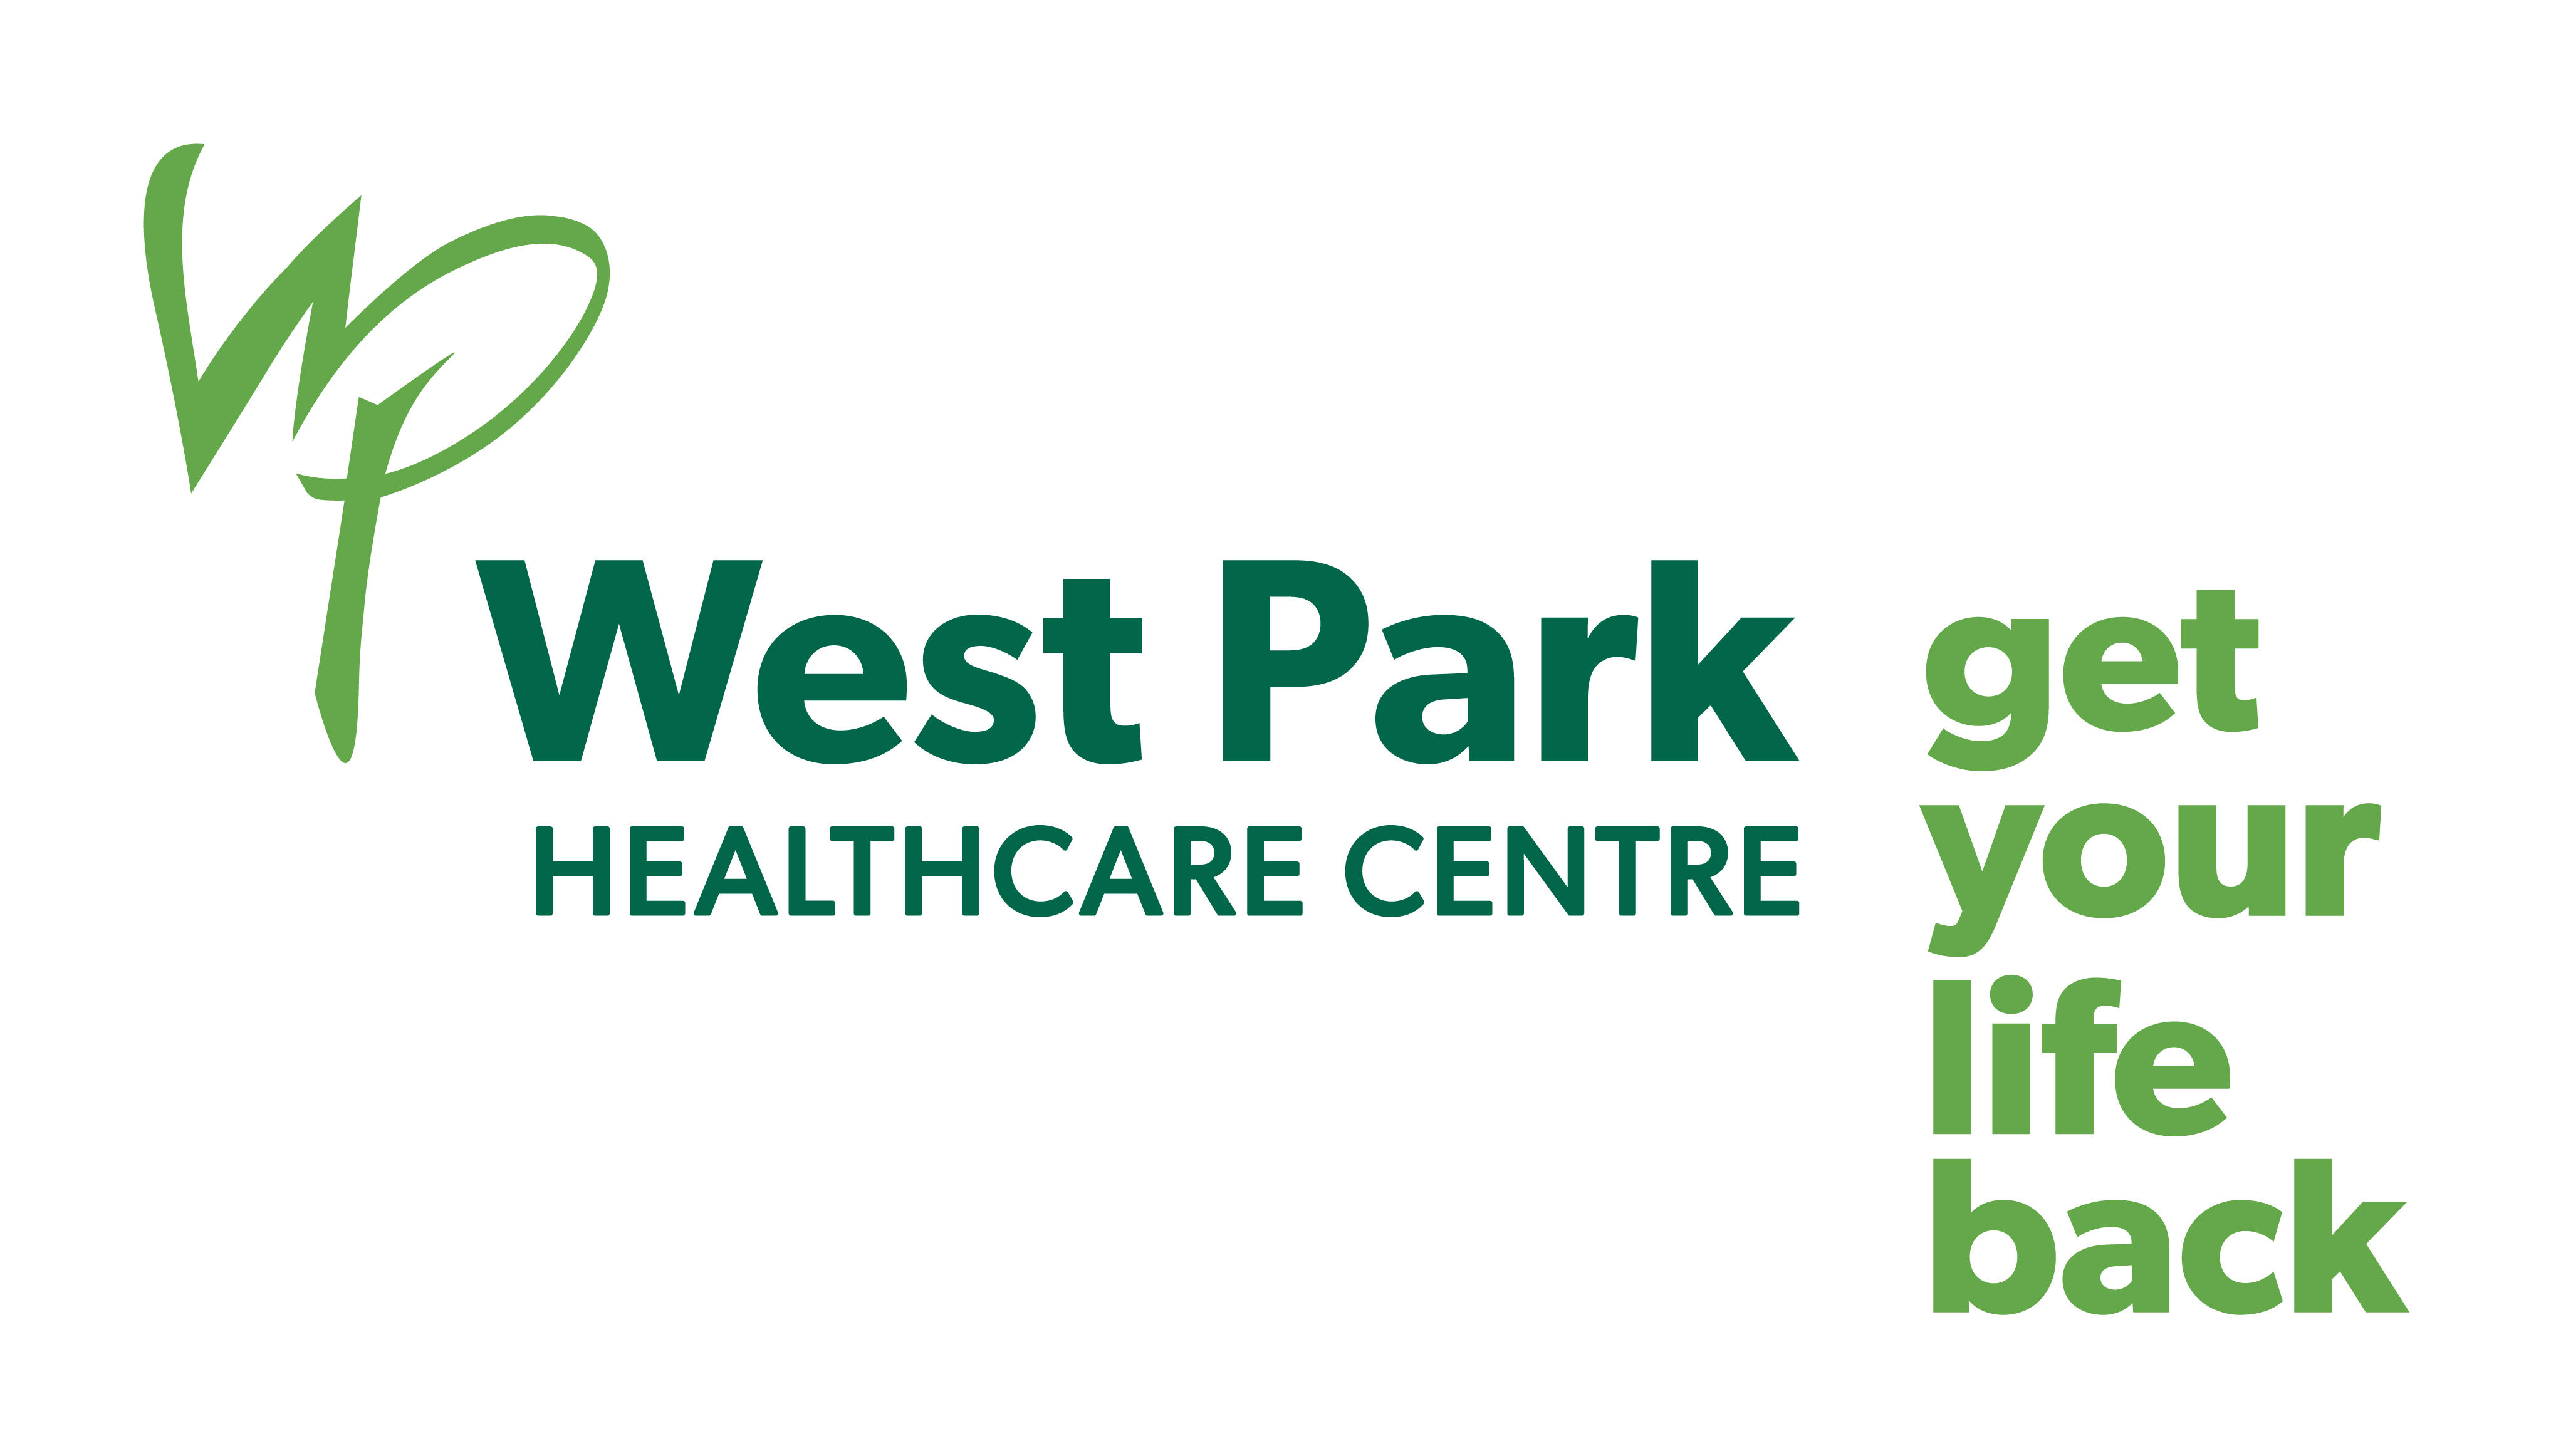 west park healthcare centre